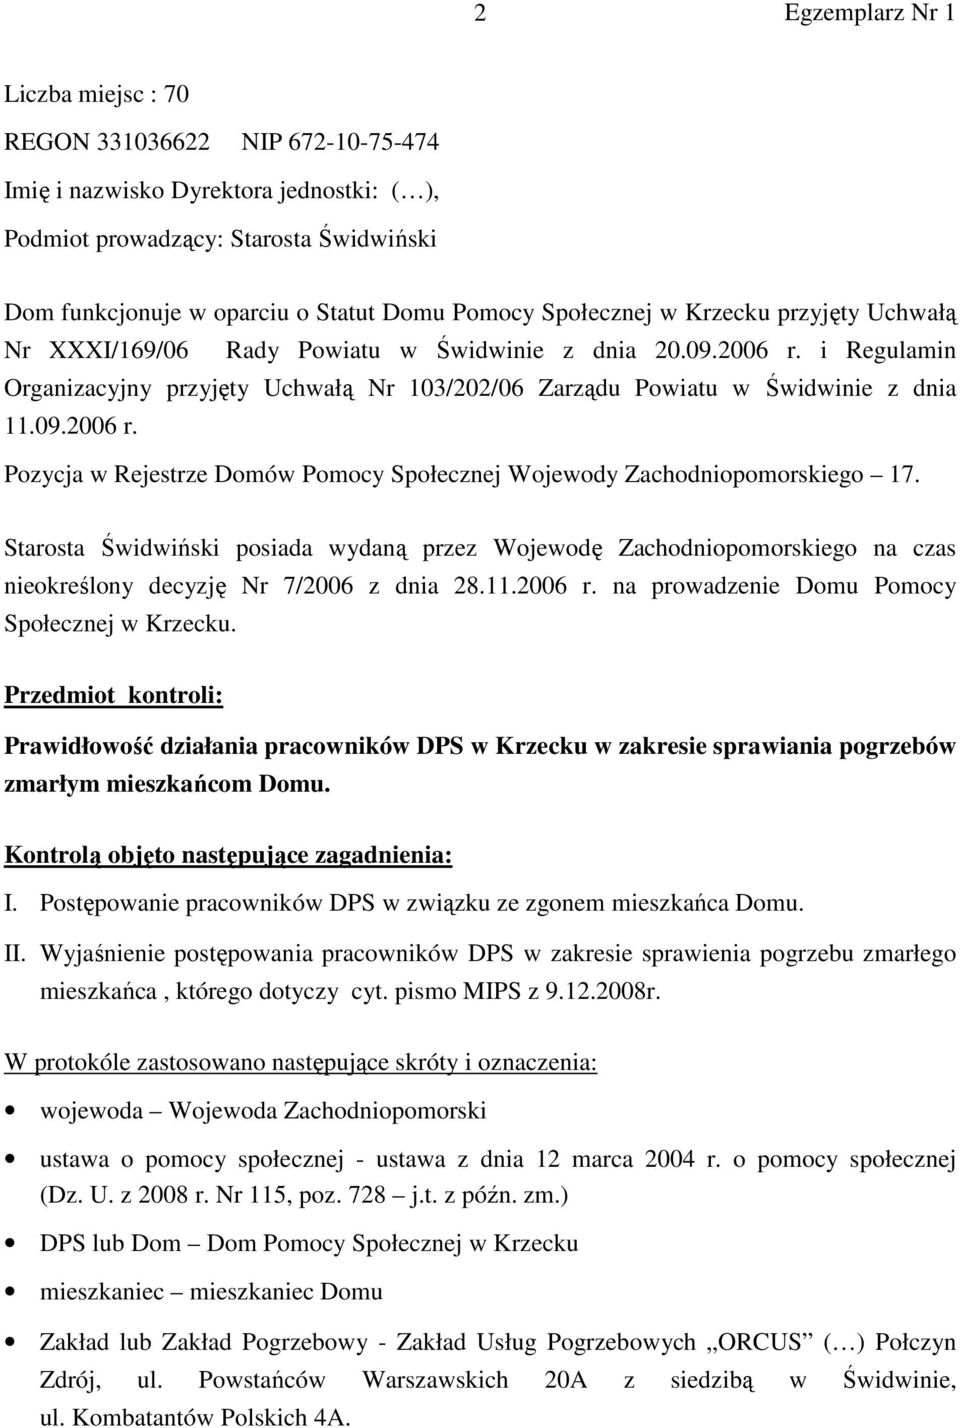 Starosta Świdwiński posiada wydaną przez Wojewodę Zachodniopomorskiego na czas nieokreślony decyzję Nr 7/2006 z dnia 28.11.2006 r. na prowadzenie Domu Pomocy Społecznej w Krzecku.